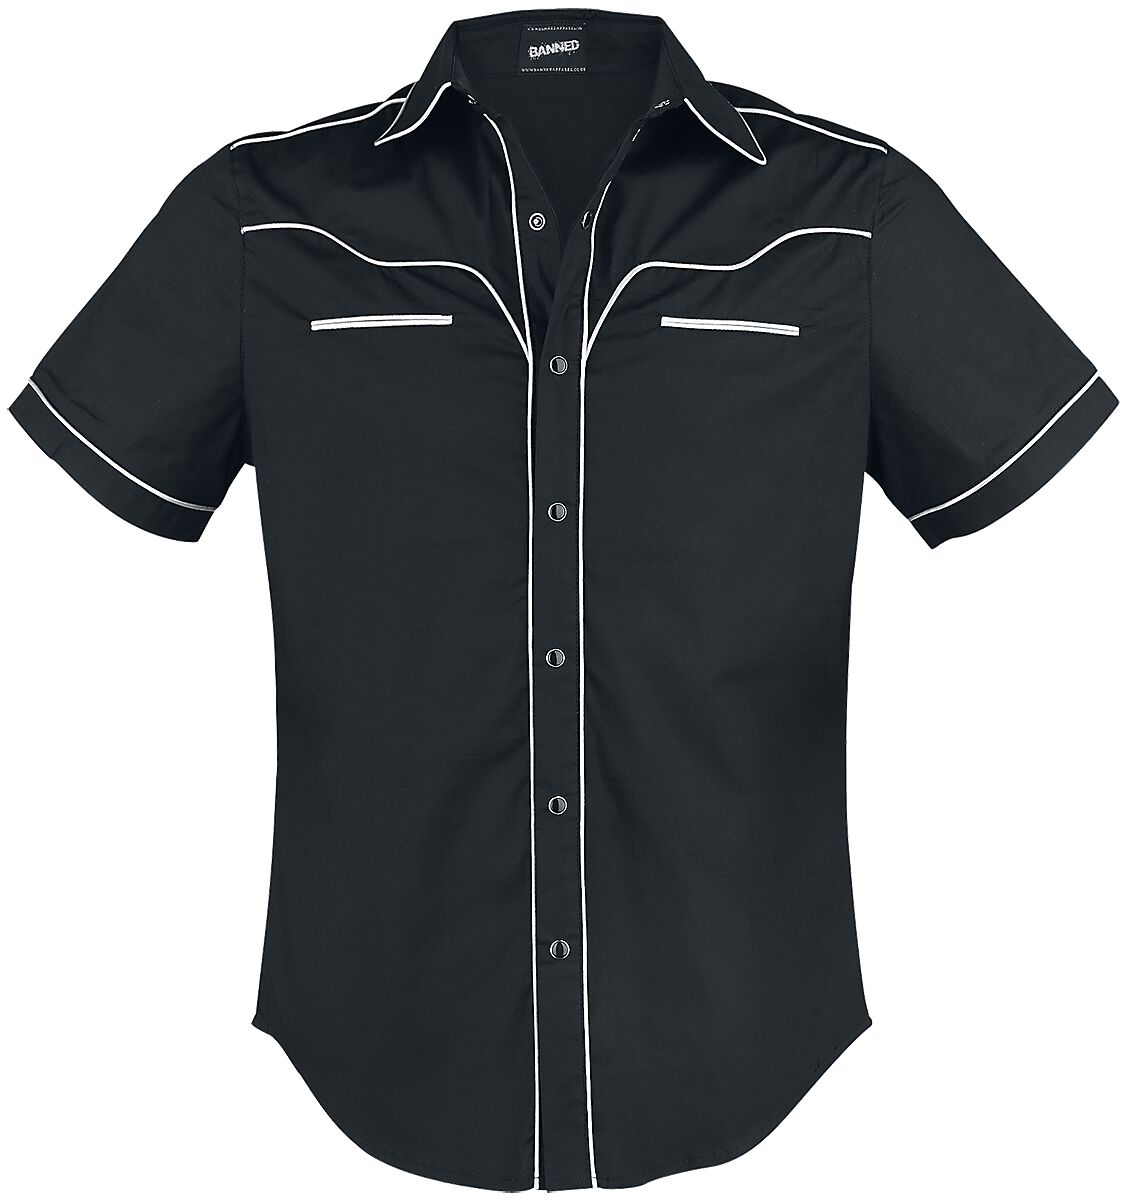 Banned Alternative - Rockabilly Kurzarmhemd - Plain Trim - S bis 5XL - für Männer - Größe XL - schwarz/weiß